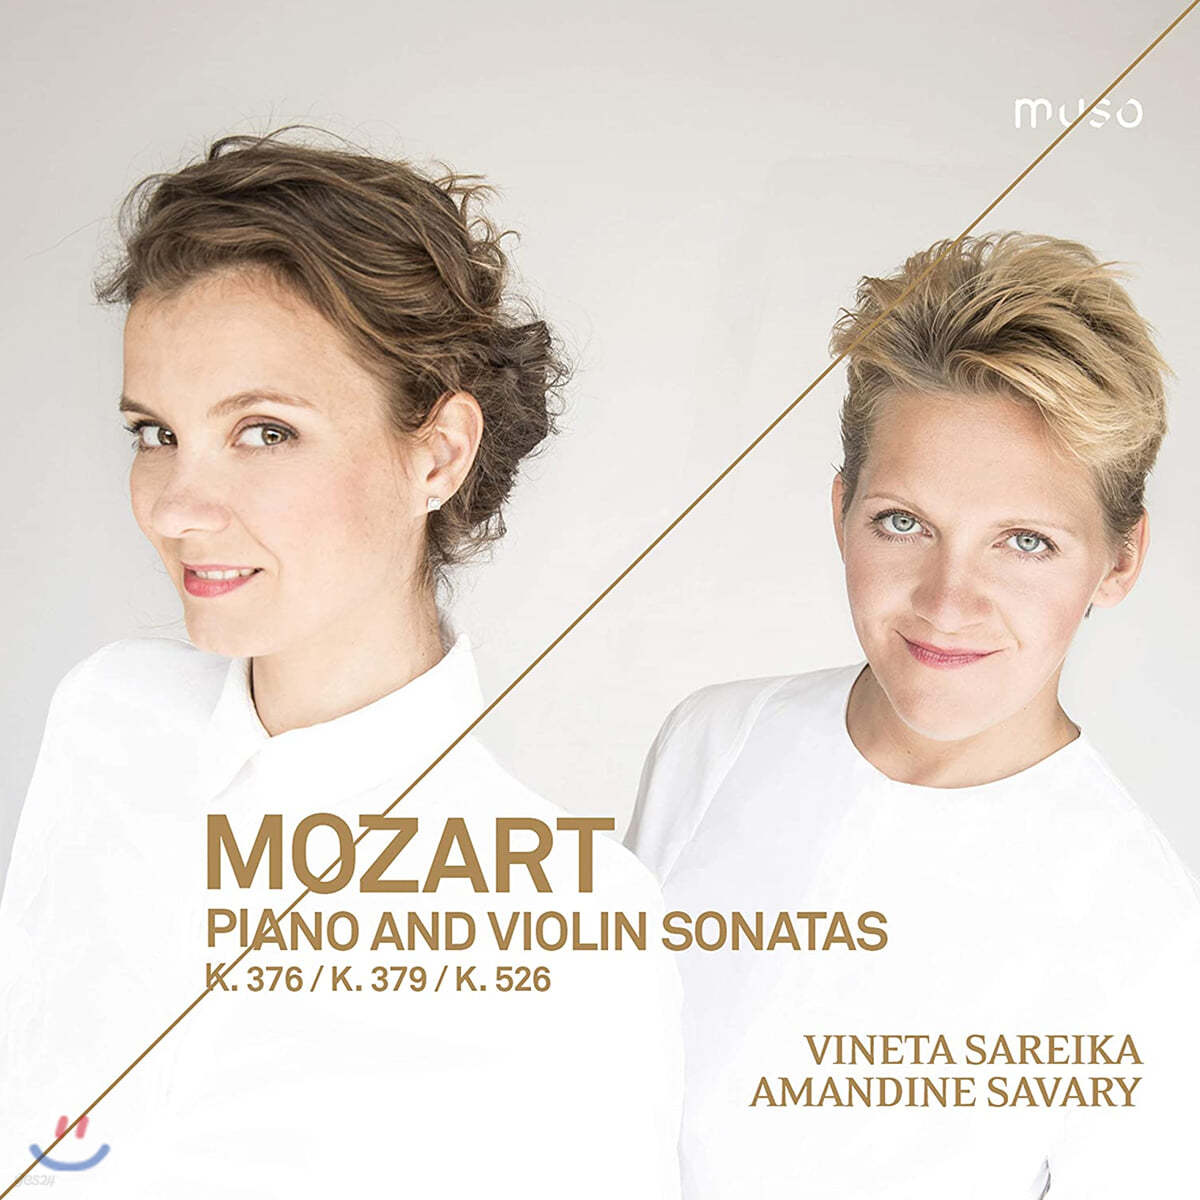 Vineta Sareika 모차르트: 바이올린 소나타 24, 27, 35번 (Mozart: Sonatas for Piano and Violin K376, K379, K526) 